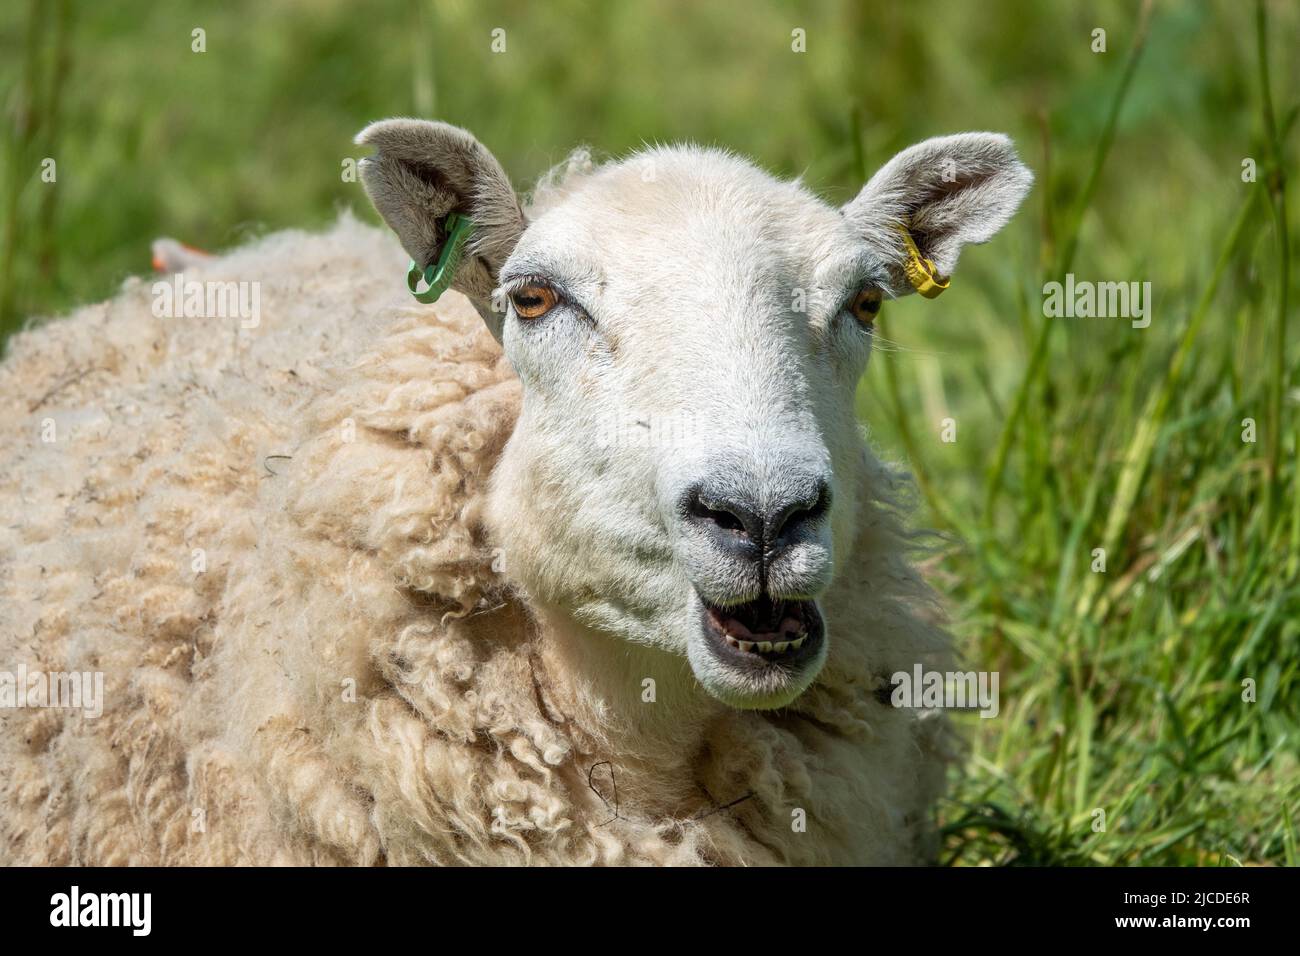 primo piano ritratto di una pecora tirando un volto divertente Foto Stock